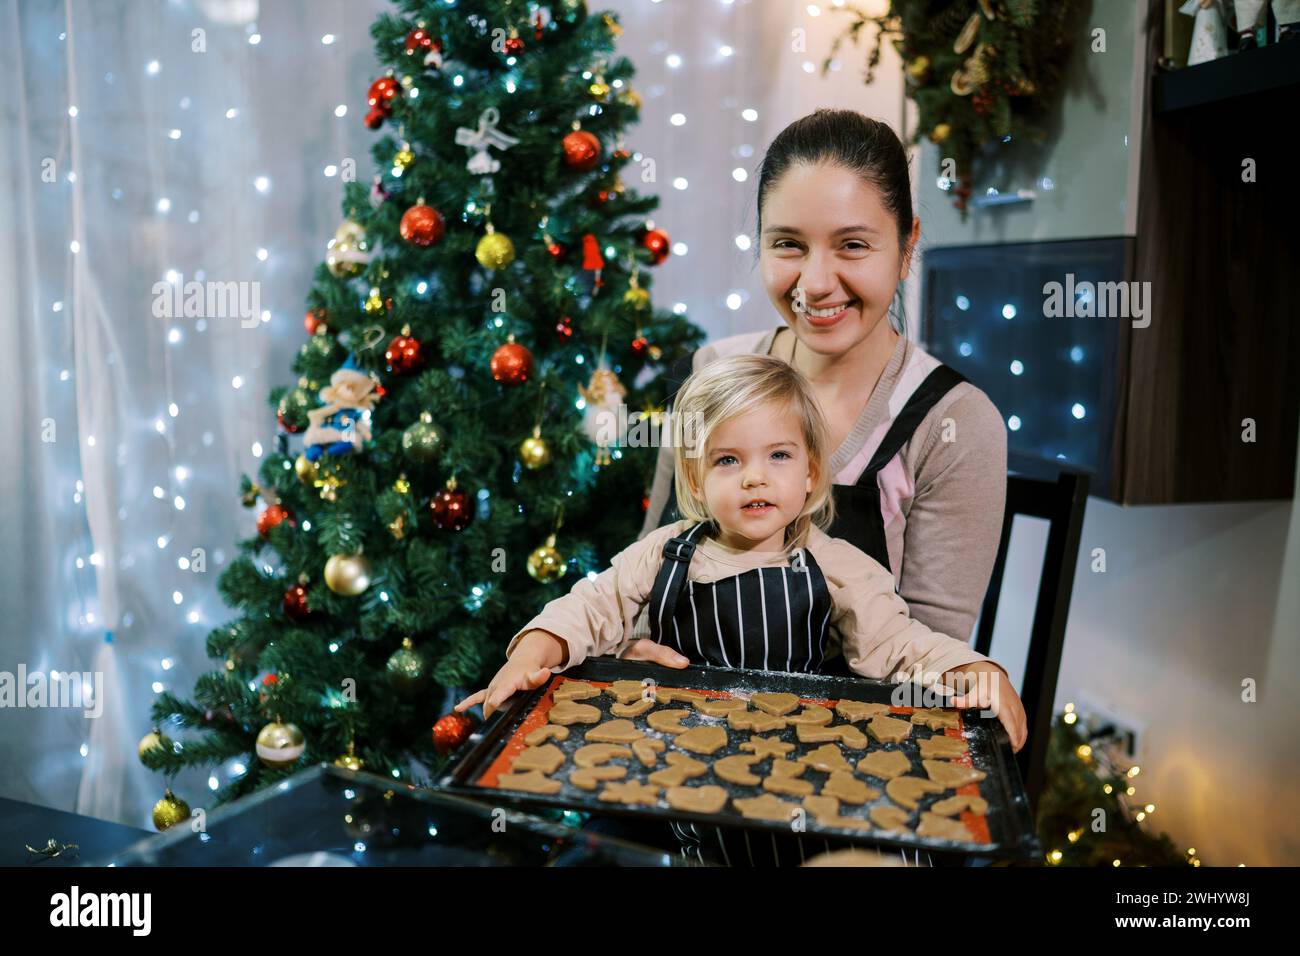 Lächelnde Mutter mit einer kleinen Tochter, die am Tisch sitzt und ein Blatt roher Weihnachtsplätzchen hat Stockfoto